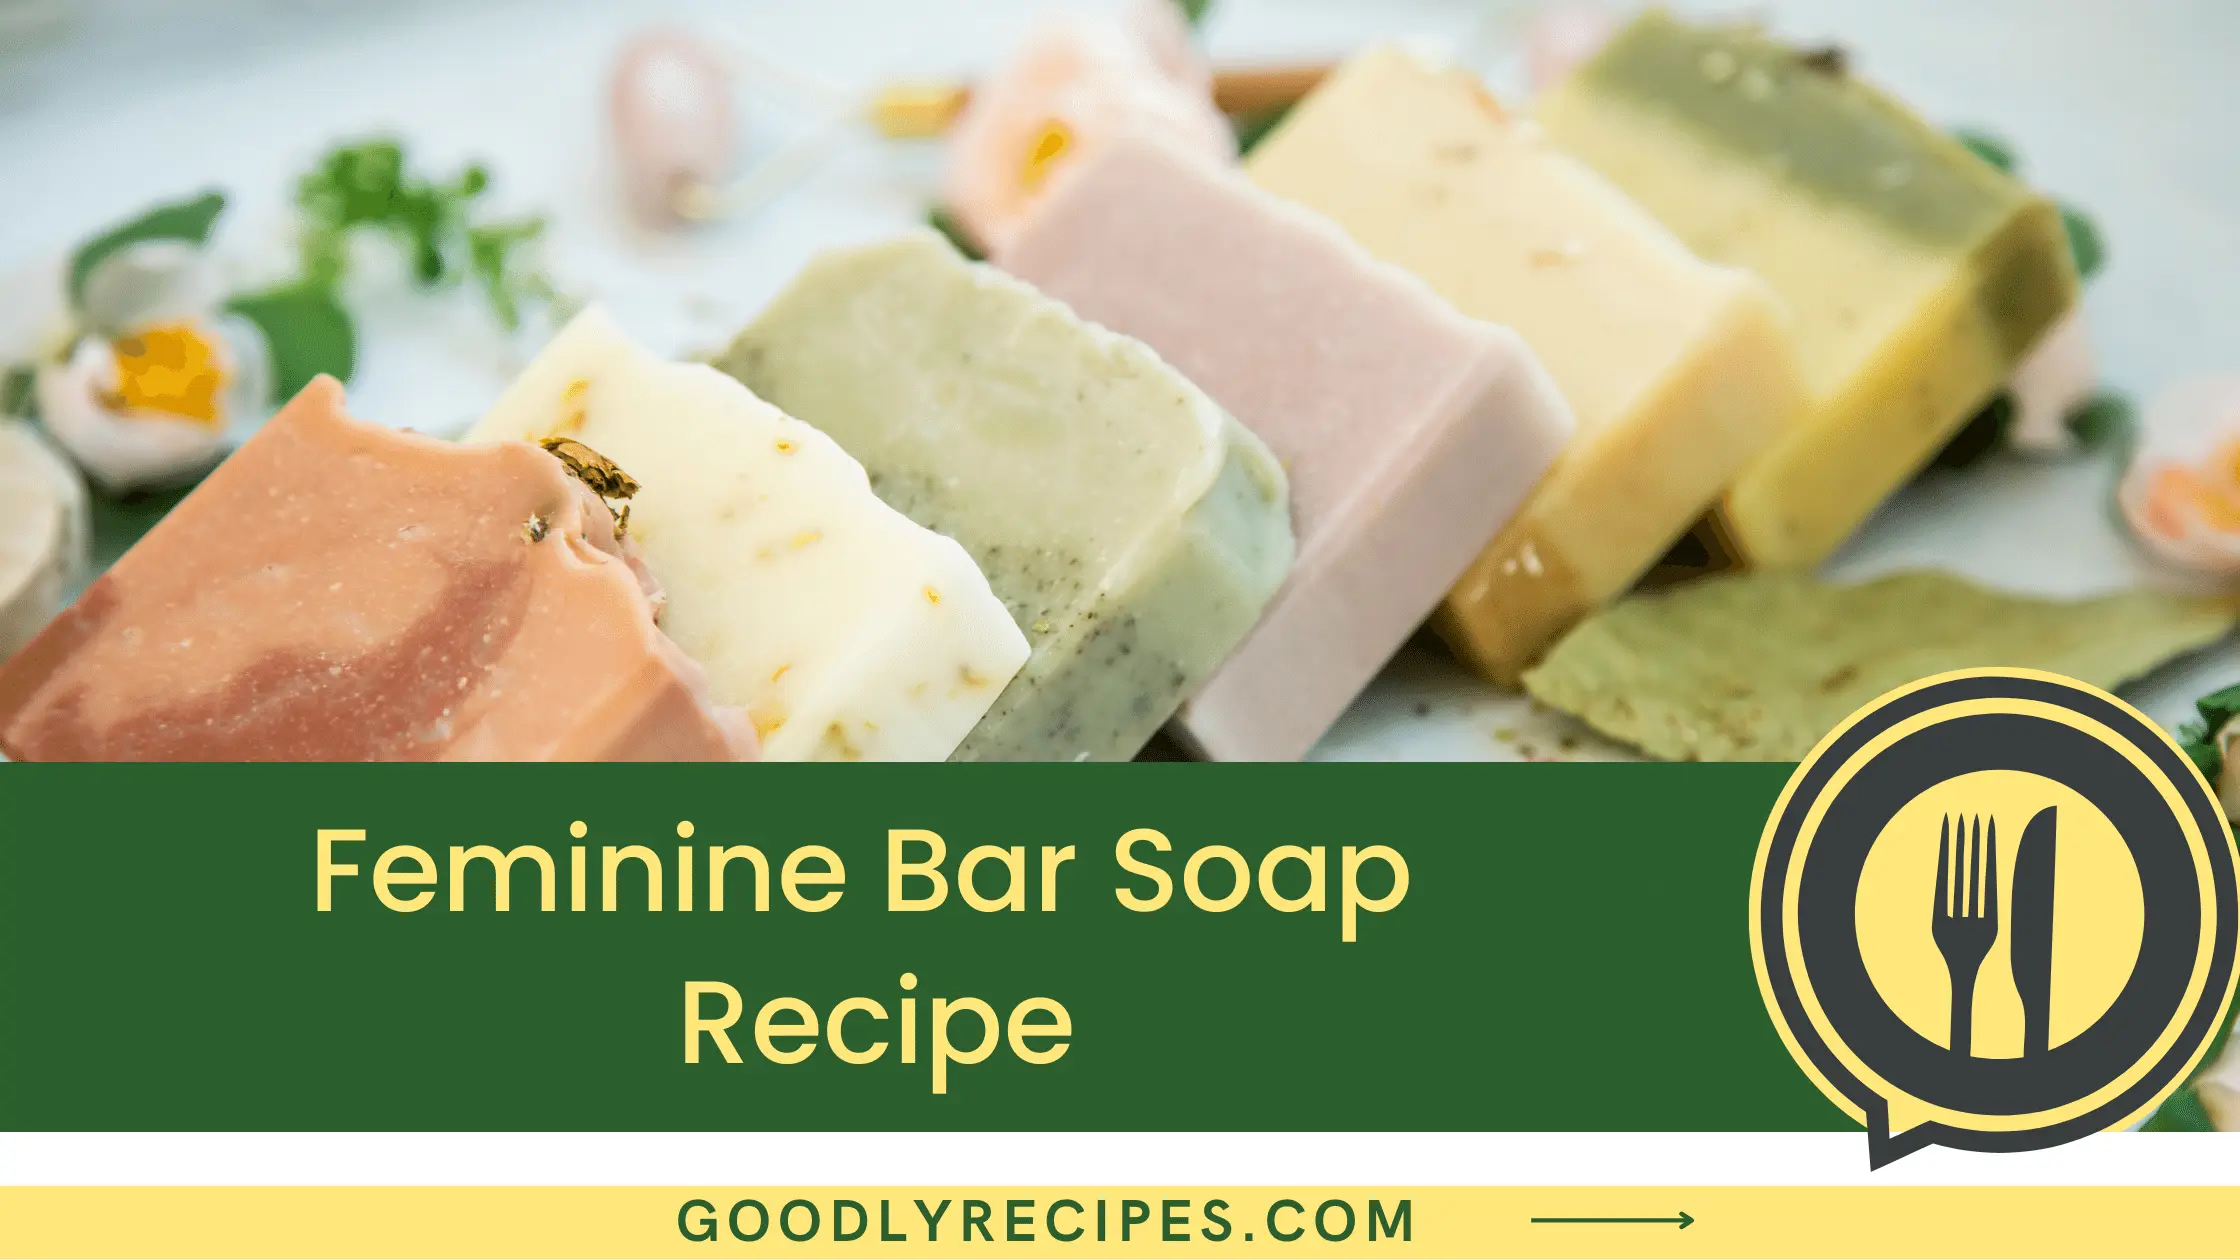 Feminine Bar Soap Recipe